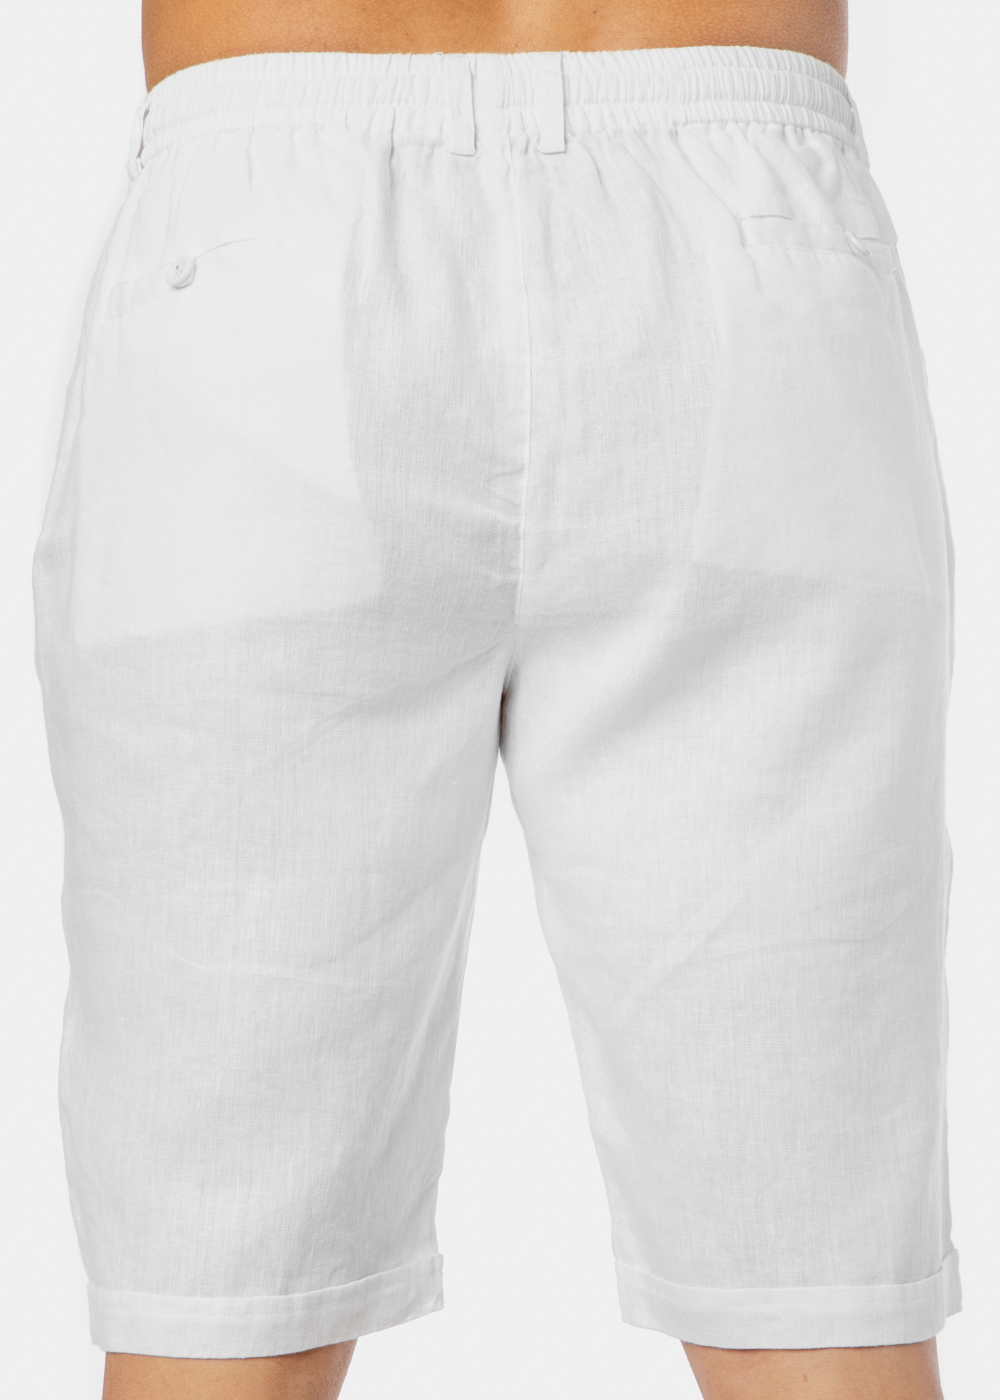 100% Linen White Classic Shorts